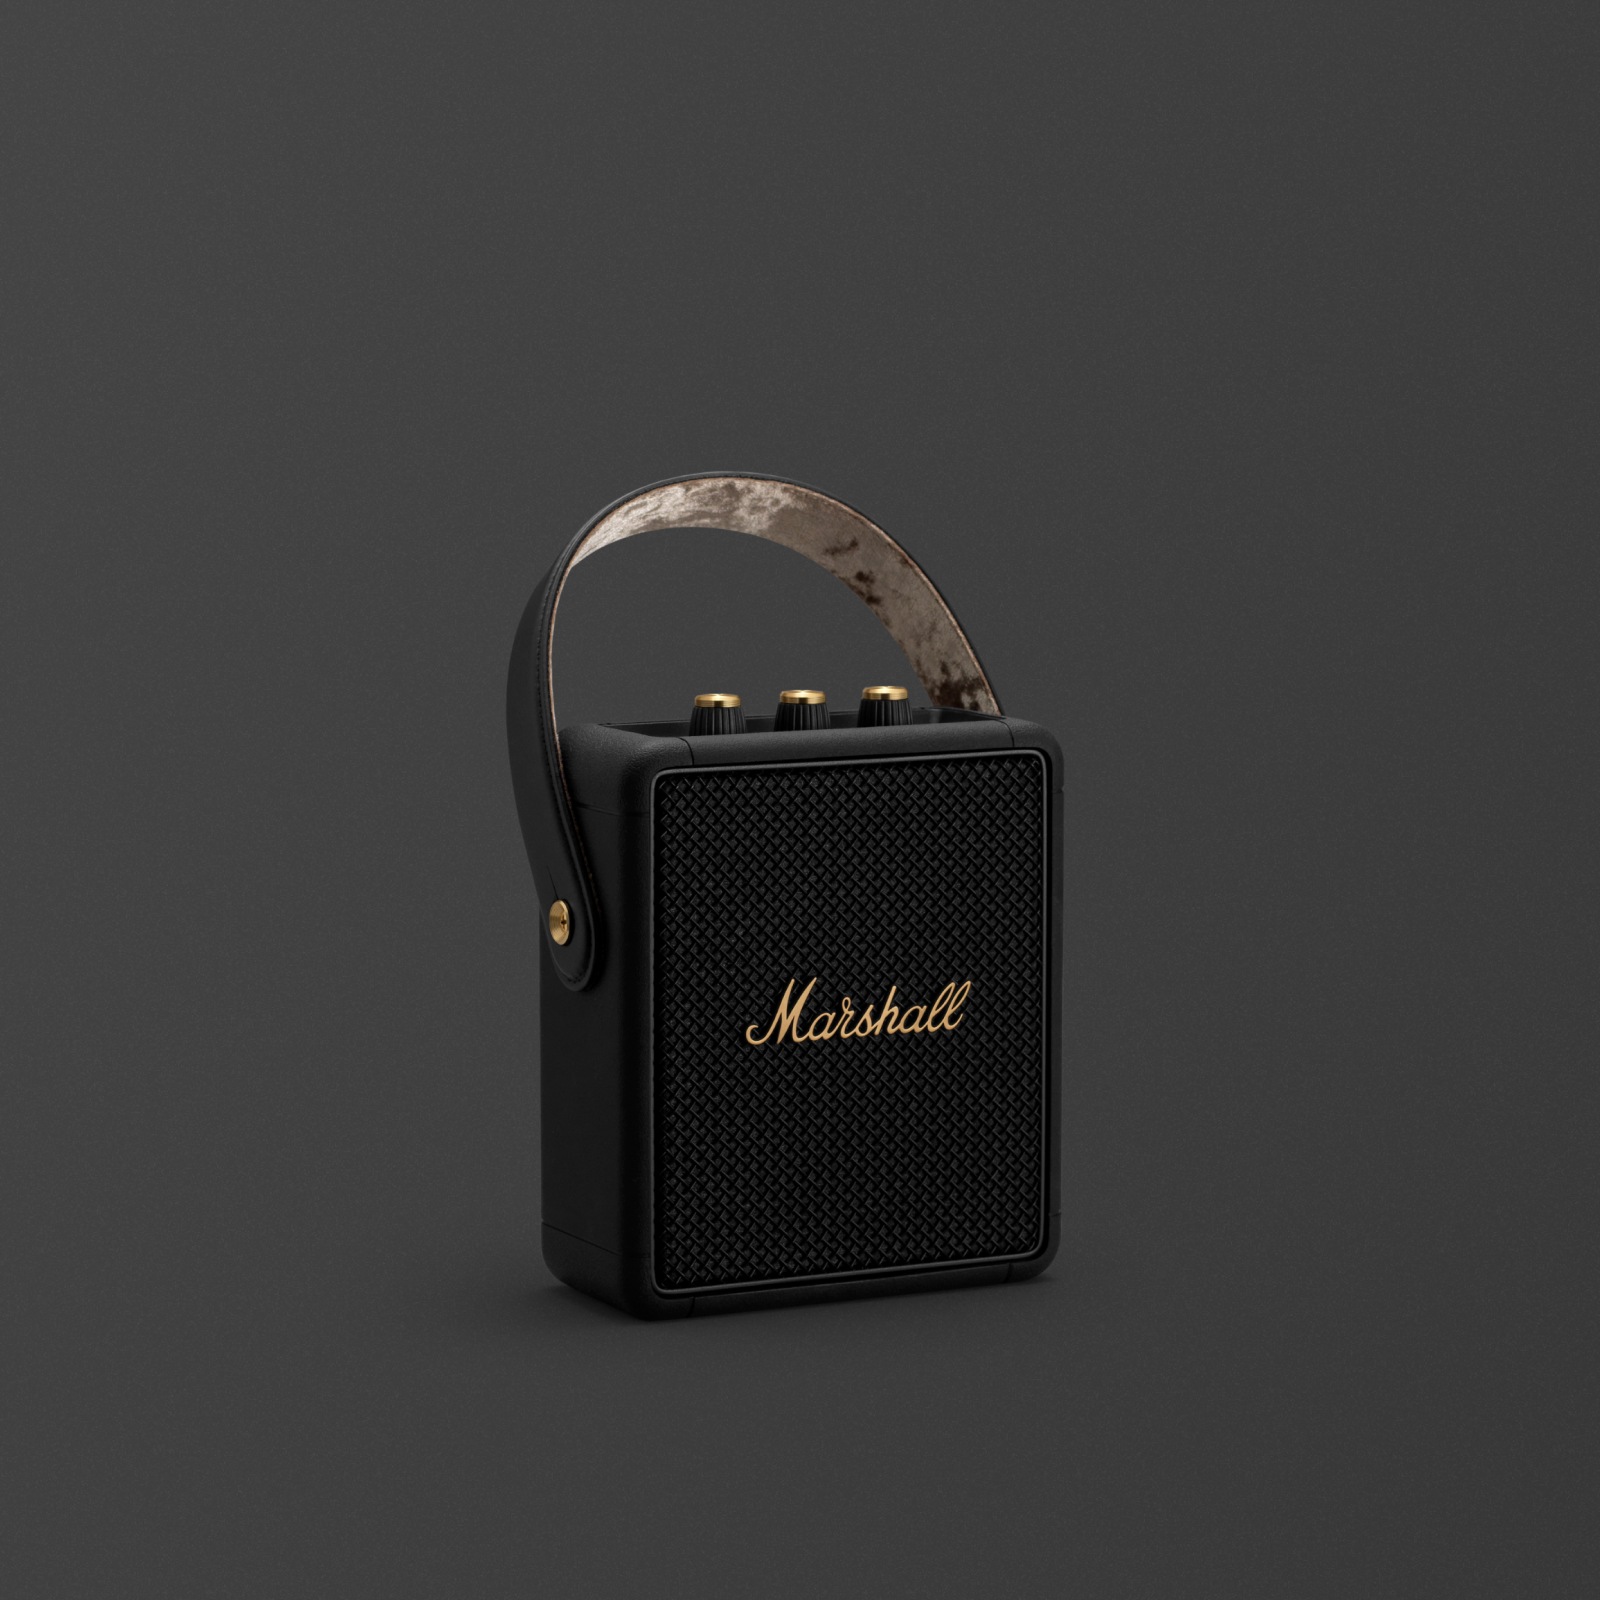 L'enceinte bluetooth portable STOCKWELL II BLACK AND BRASS de Marshall est une option compacte et légère pour les amateurs de musique nomade.